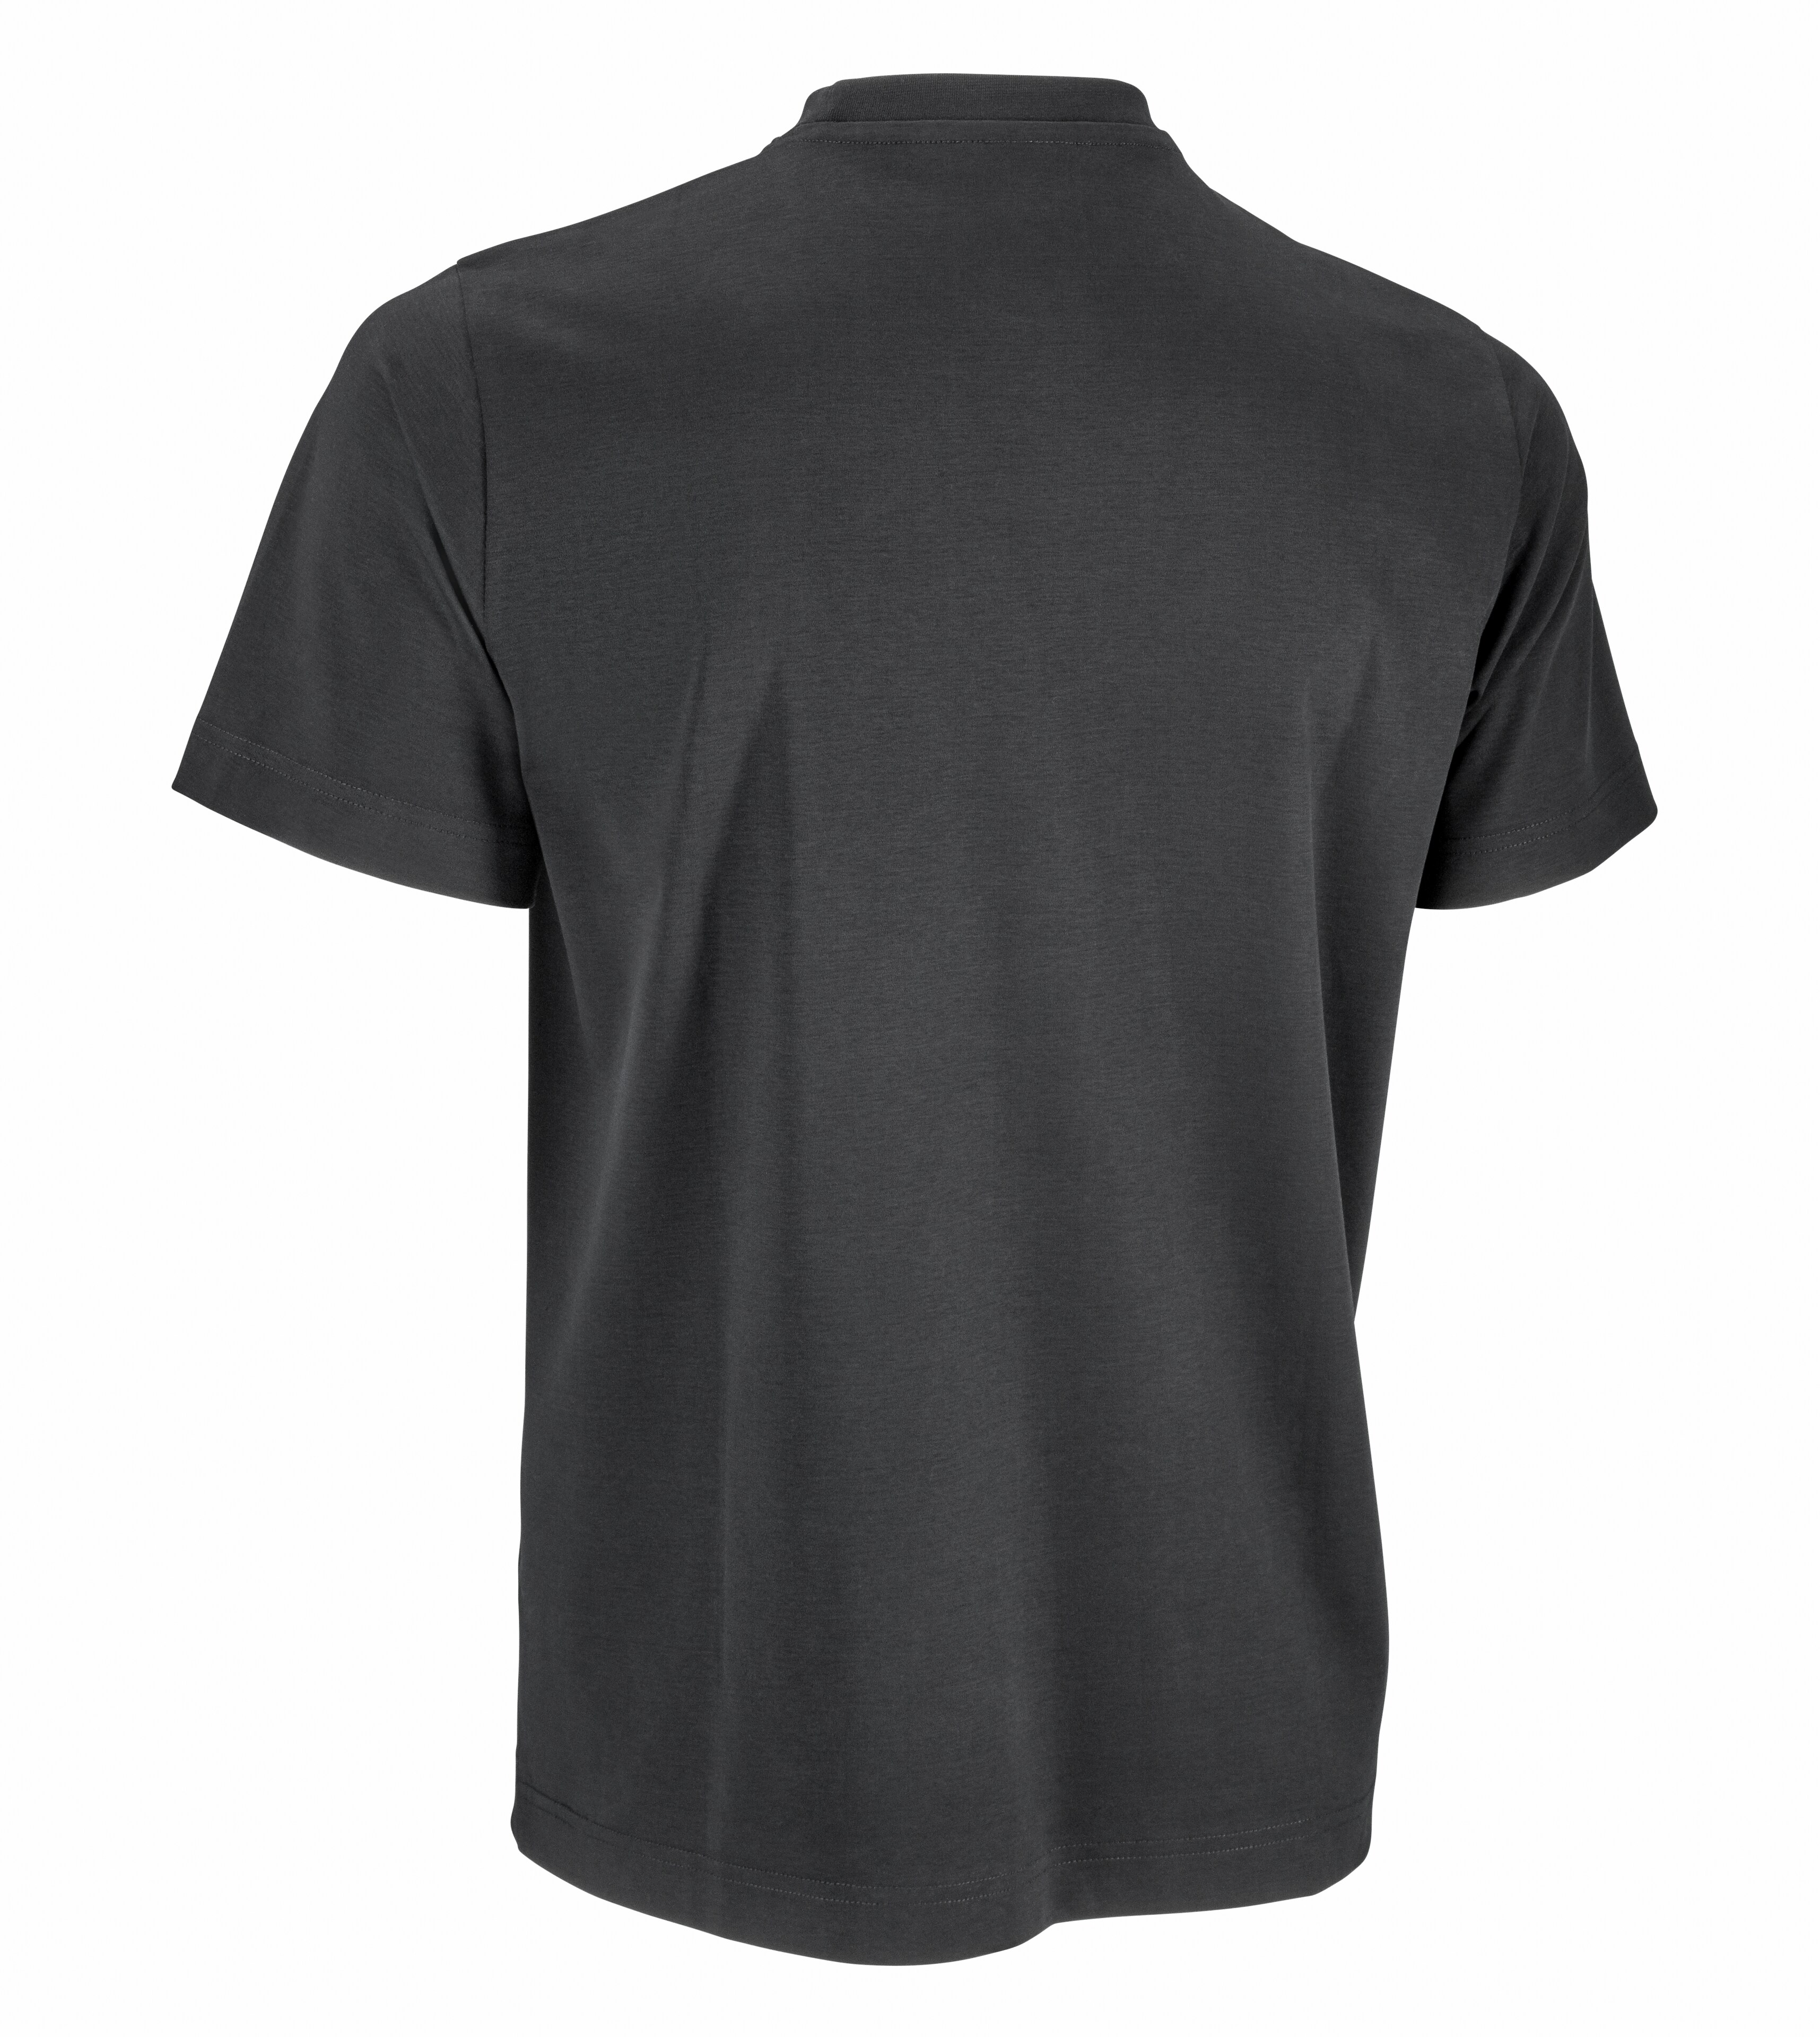 T-Shirt Unisex - schwarz, S